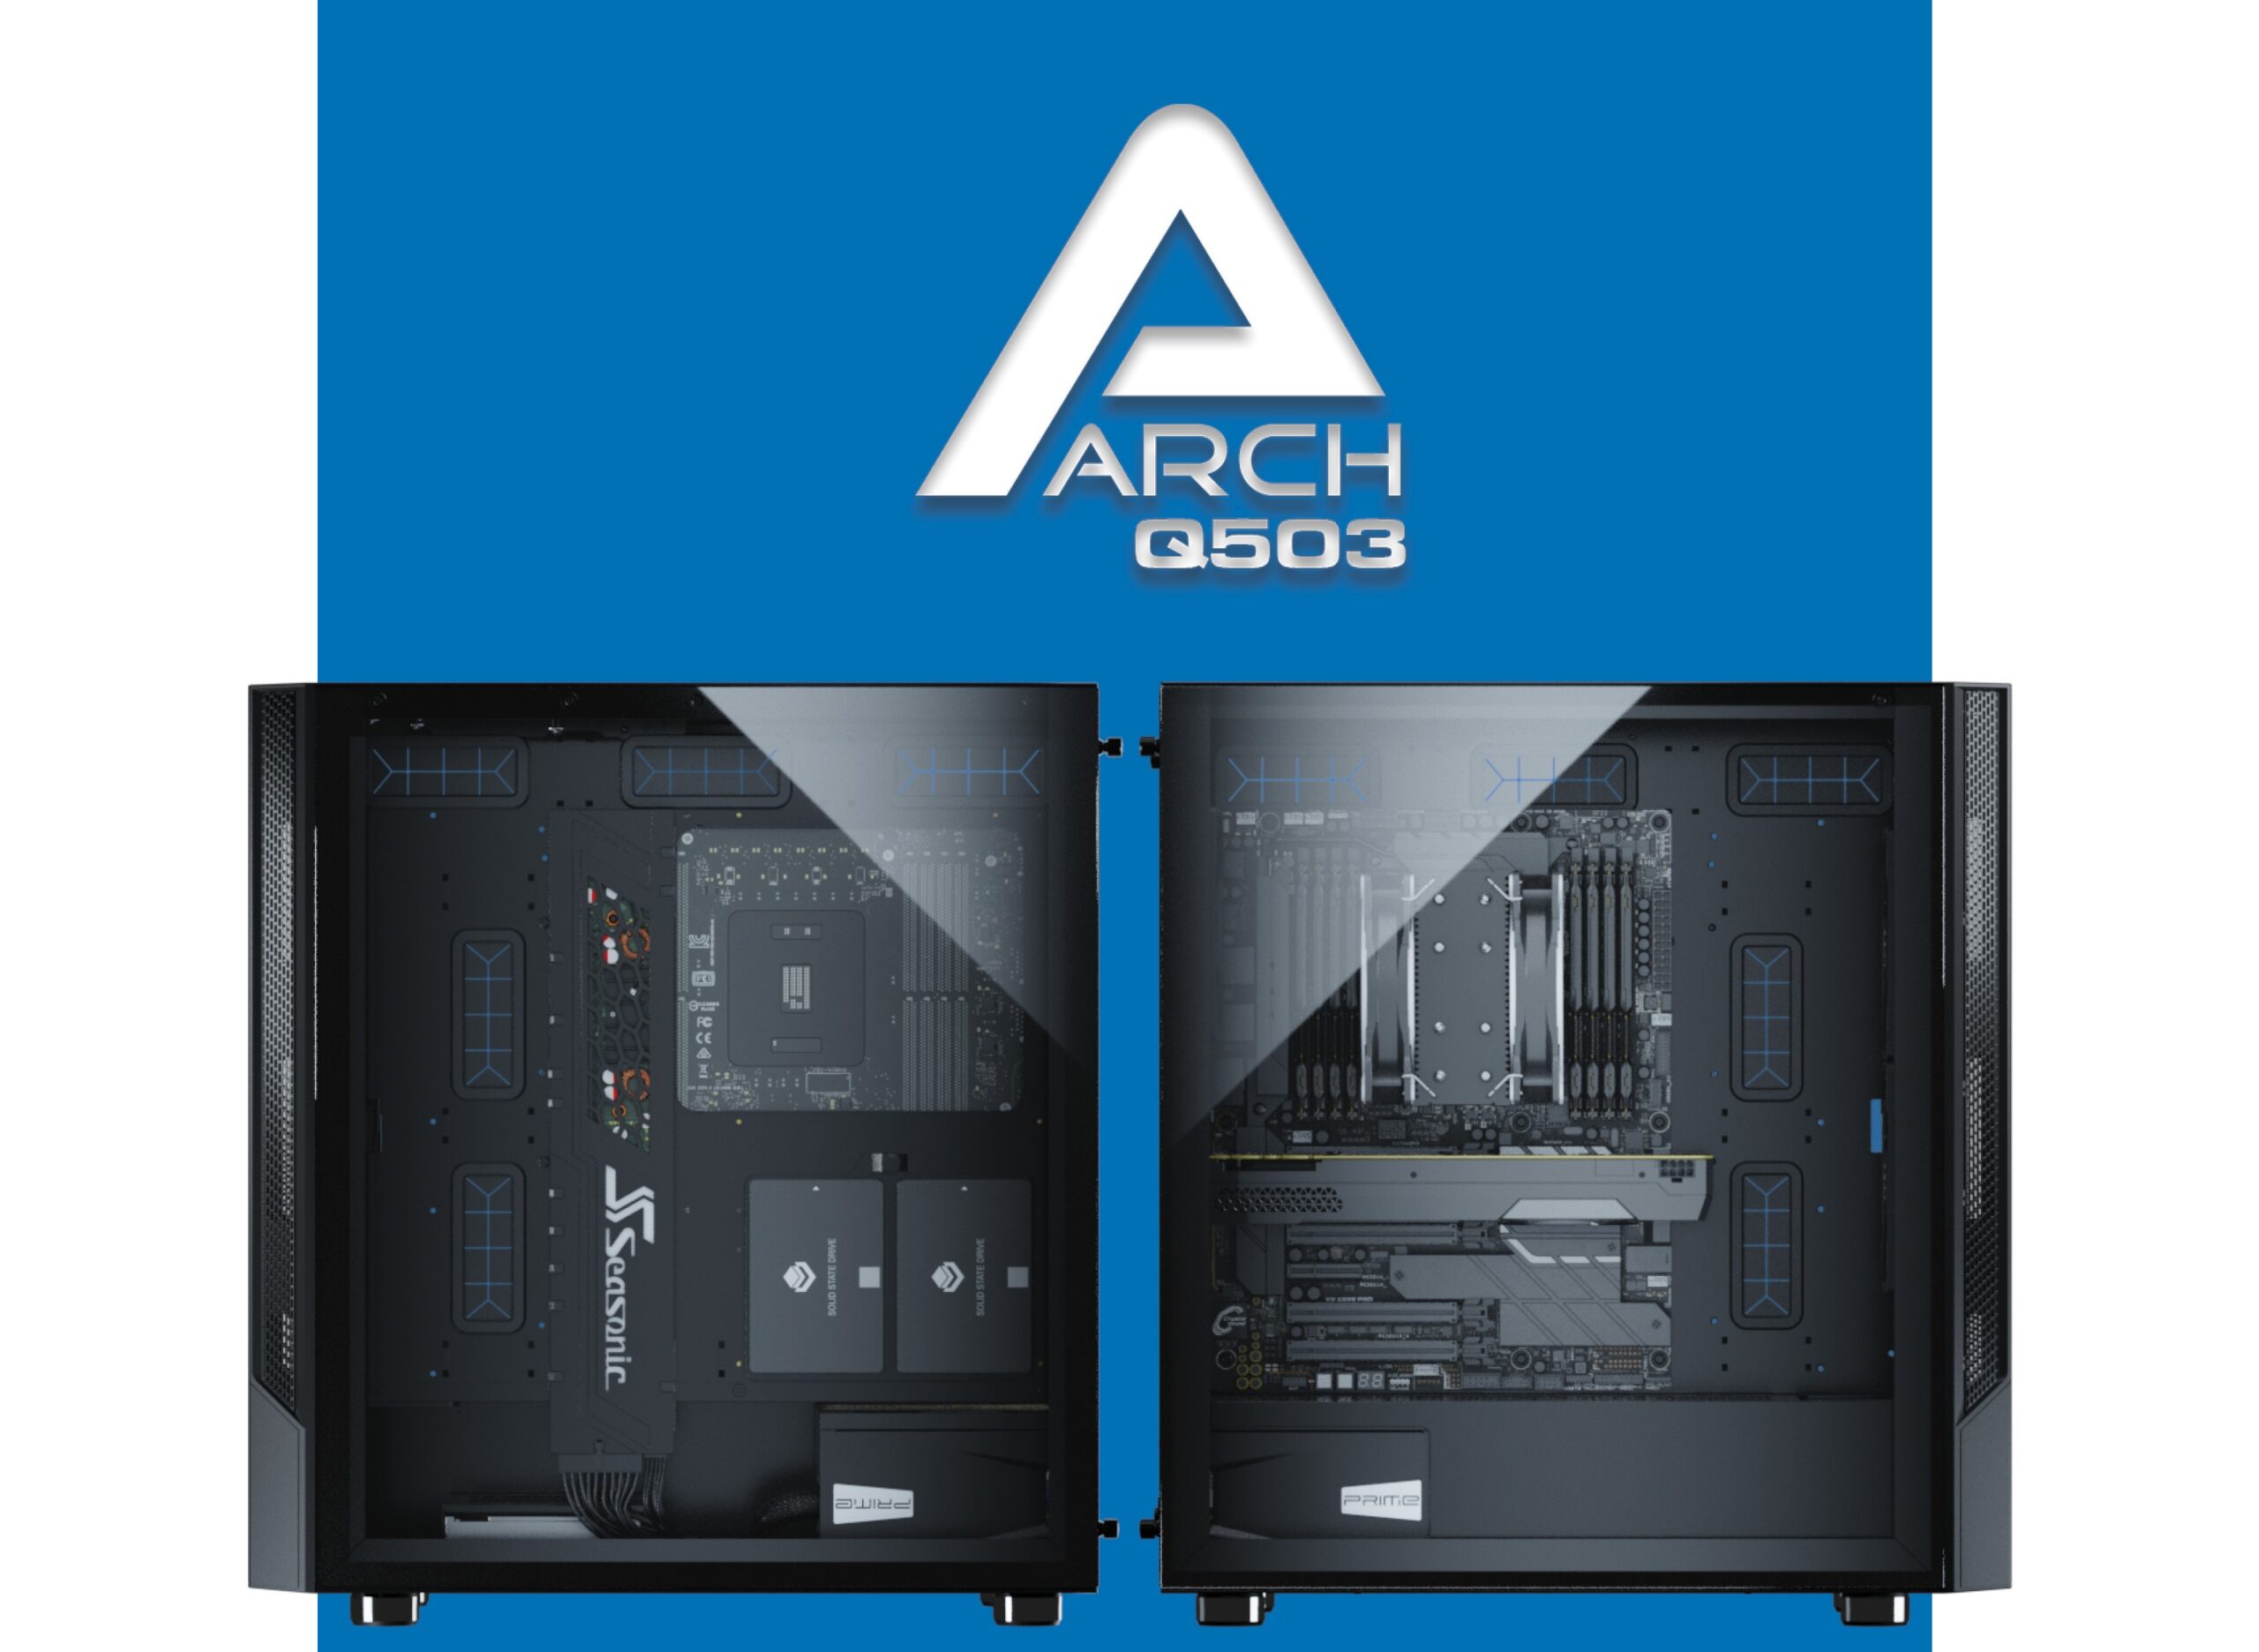 SeaSonic anunció el case ARCH para PC